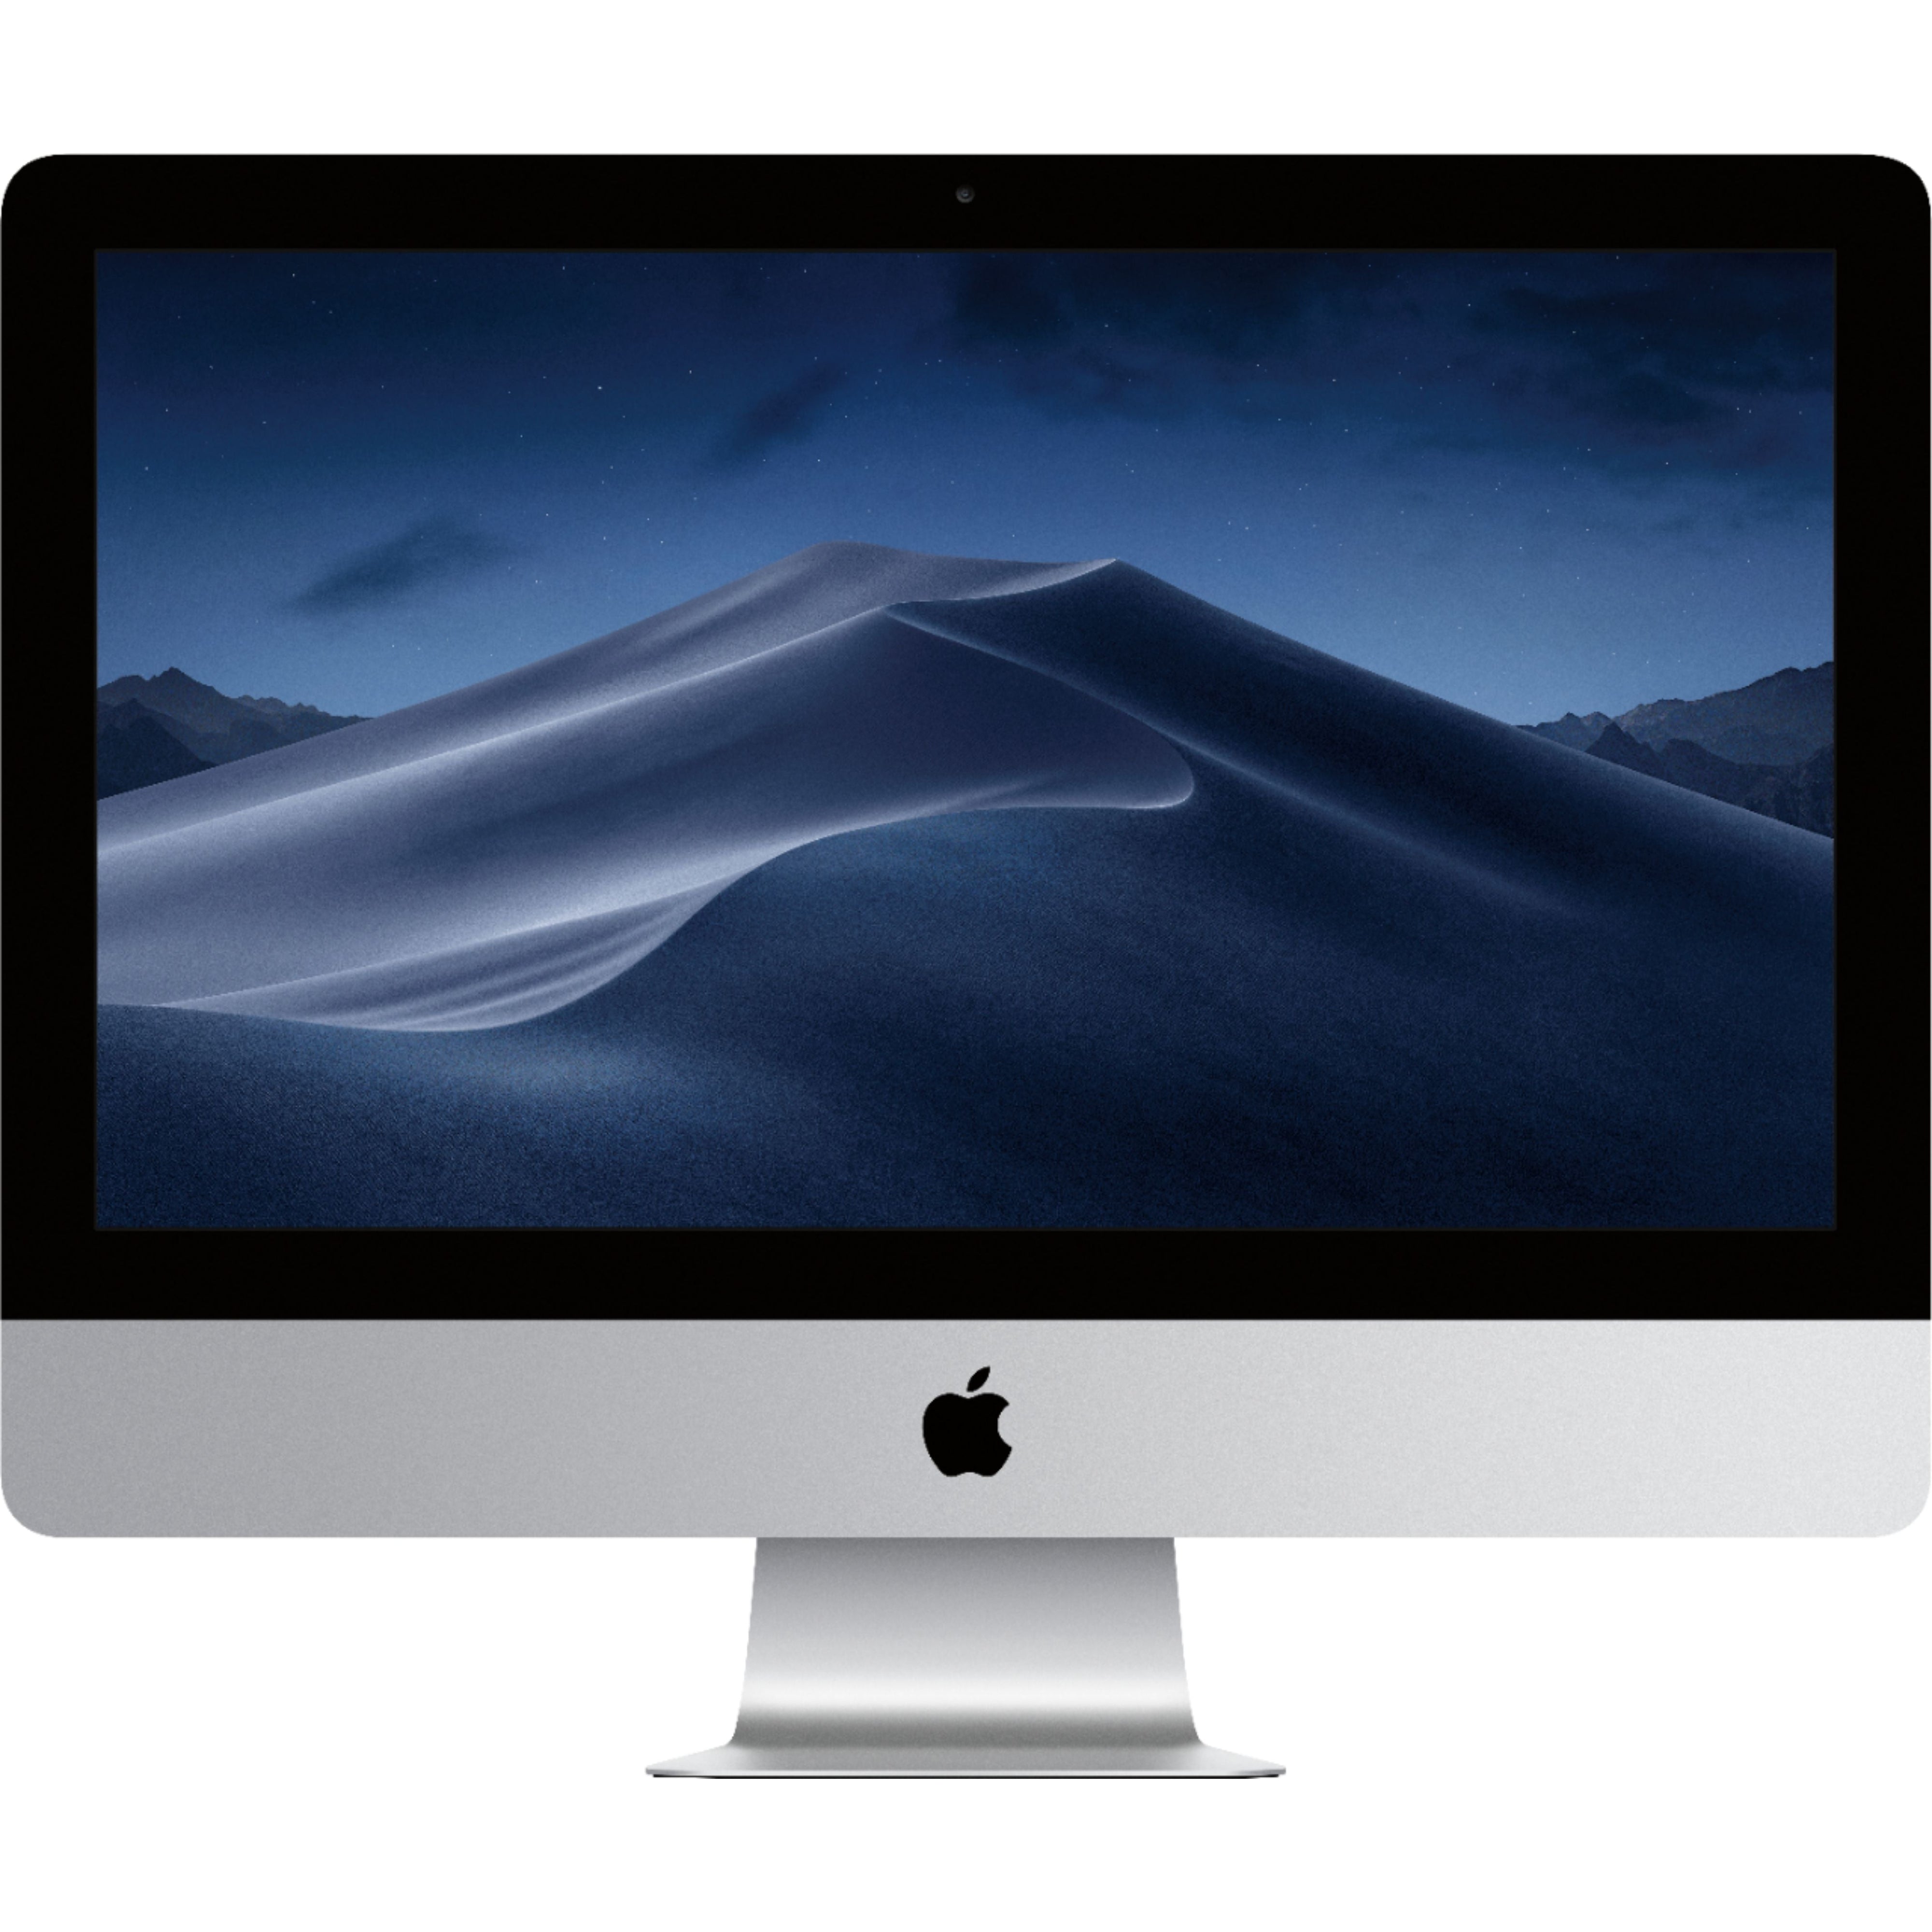 Apple iMac 21.5'' MMQA2LL/A (2017), Intel Core i5 8GB RAM 256GB SSD - Silver - Refurbished Excellent